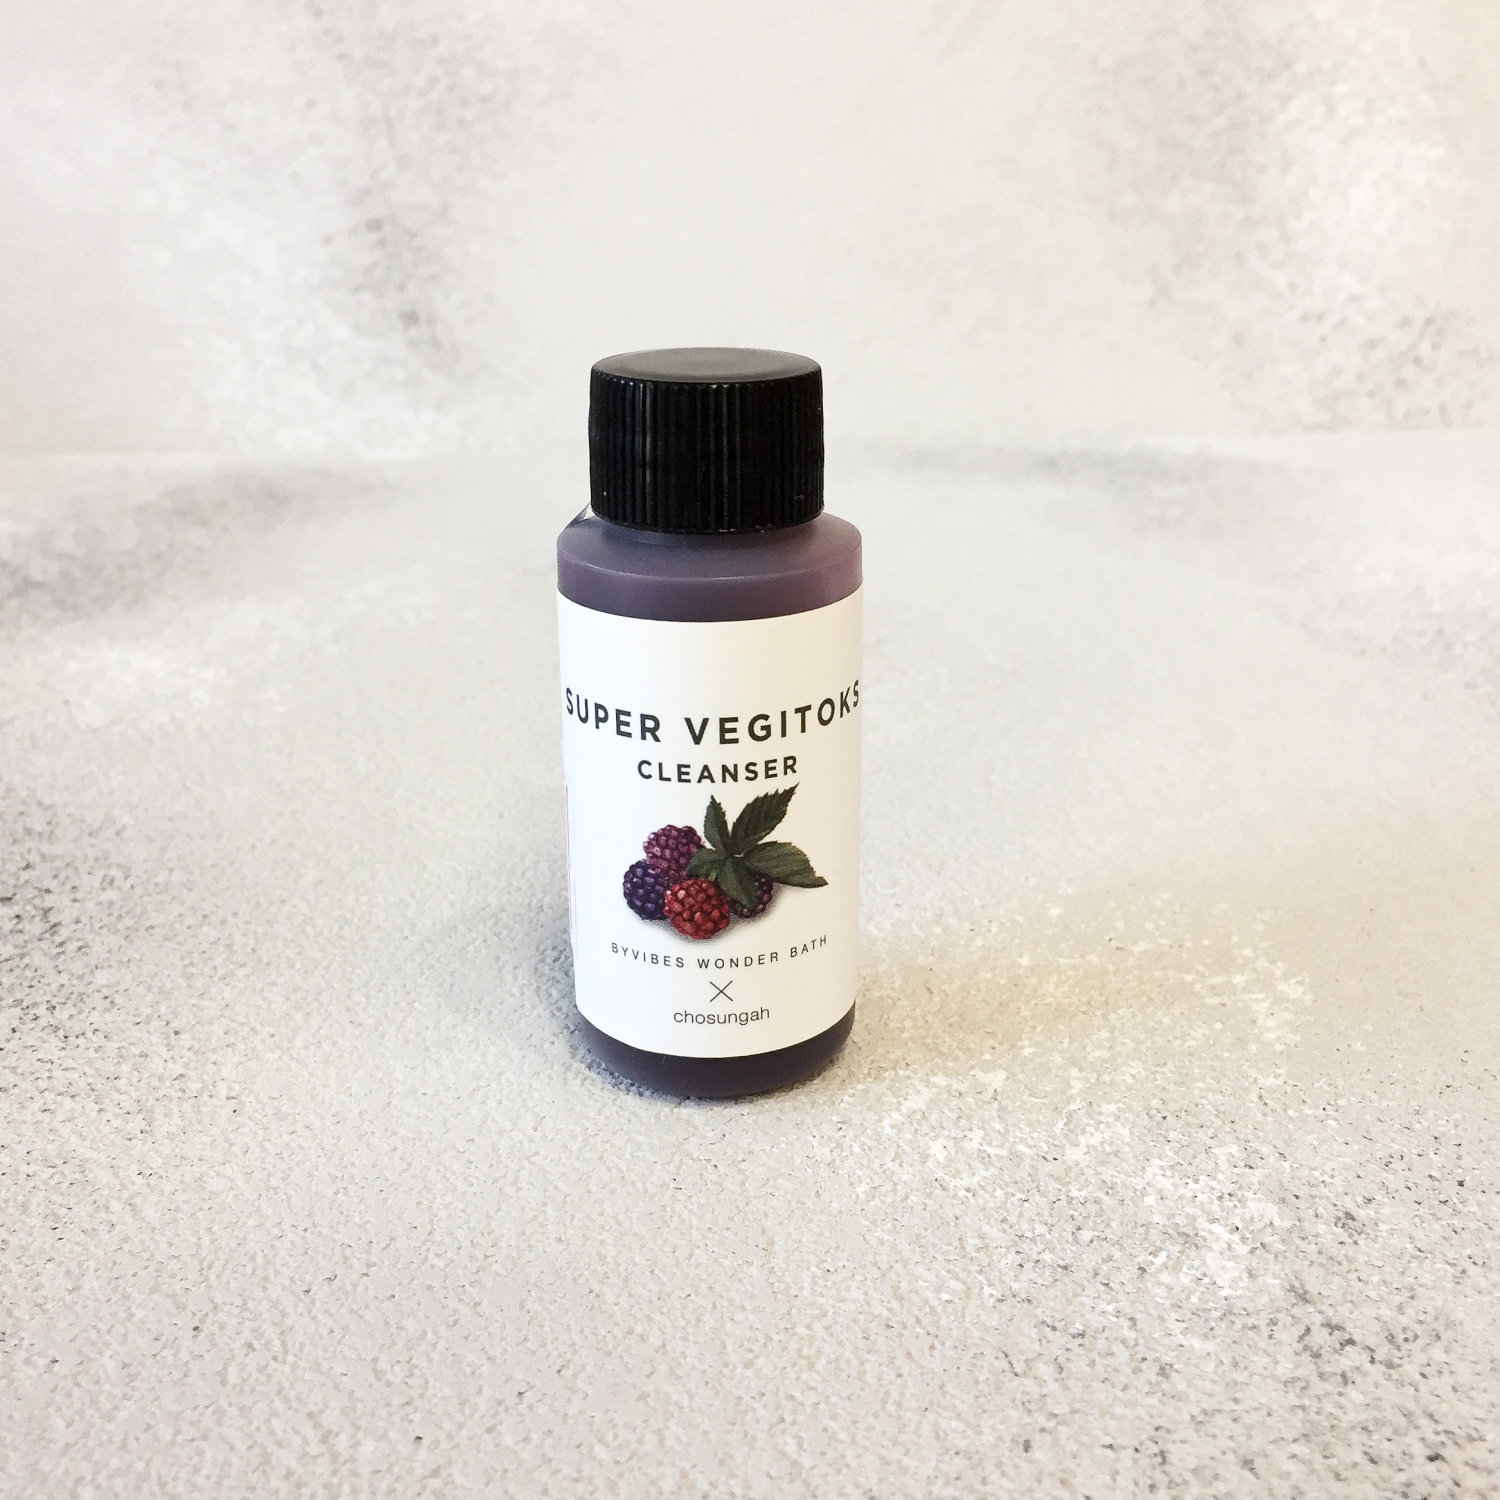 Wonder Bath Super Vegitoks Cleanser purple 30мл